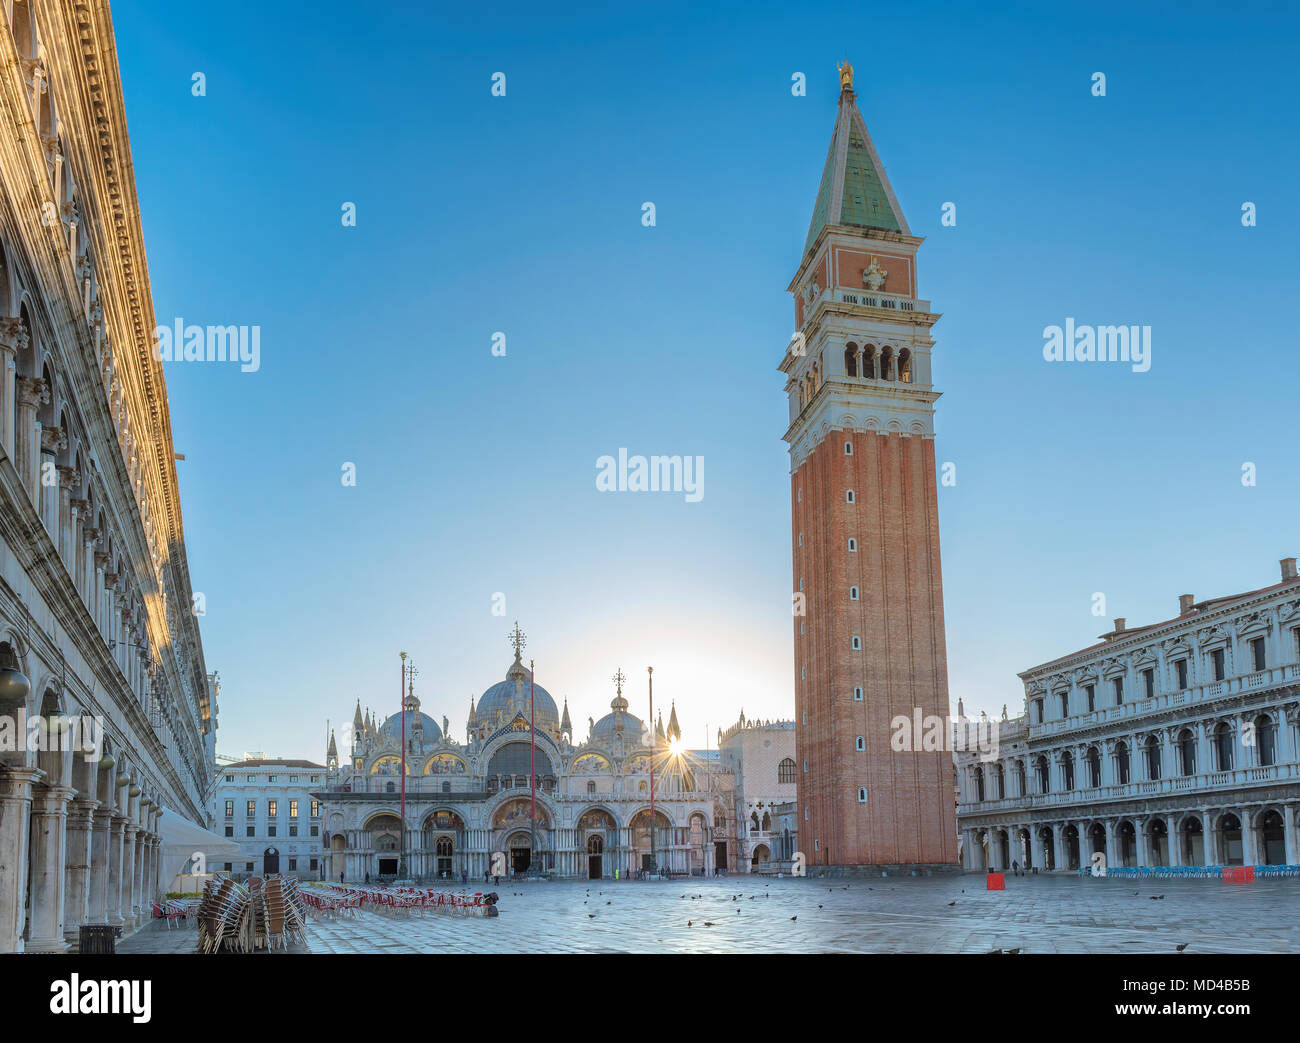 La place San Marco au lever du soleil, Venise Italie. Banque D'Images